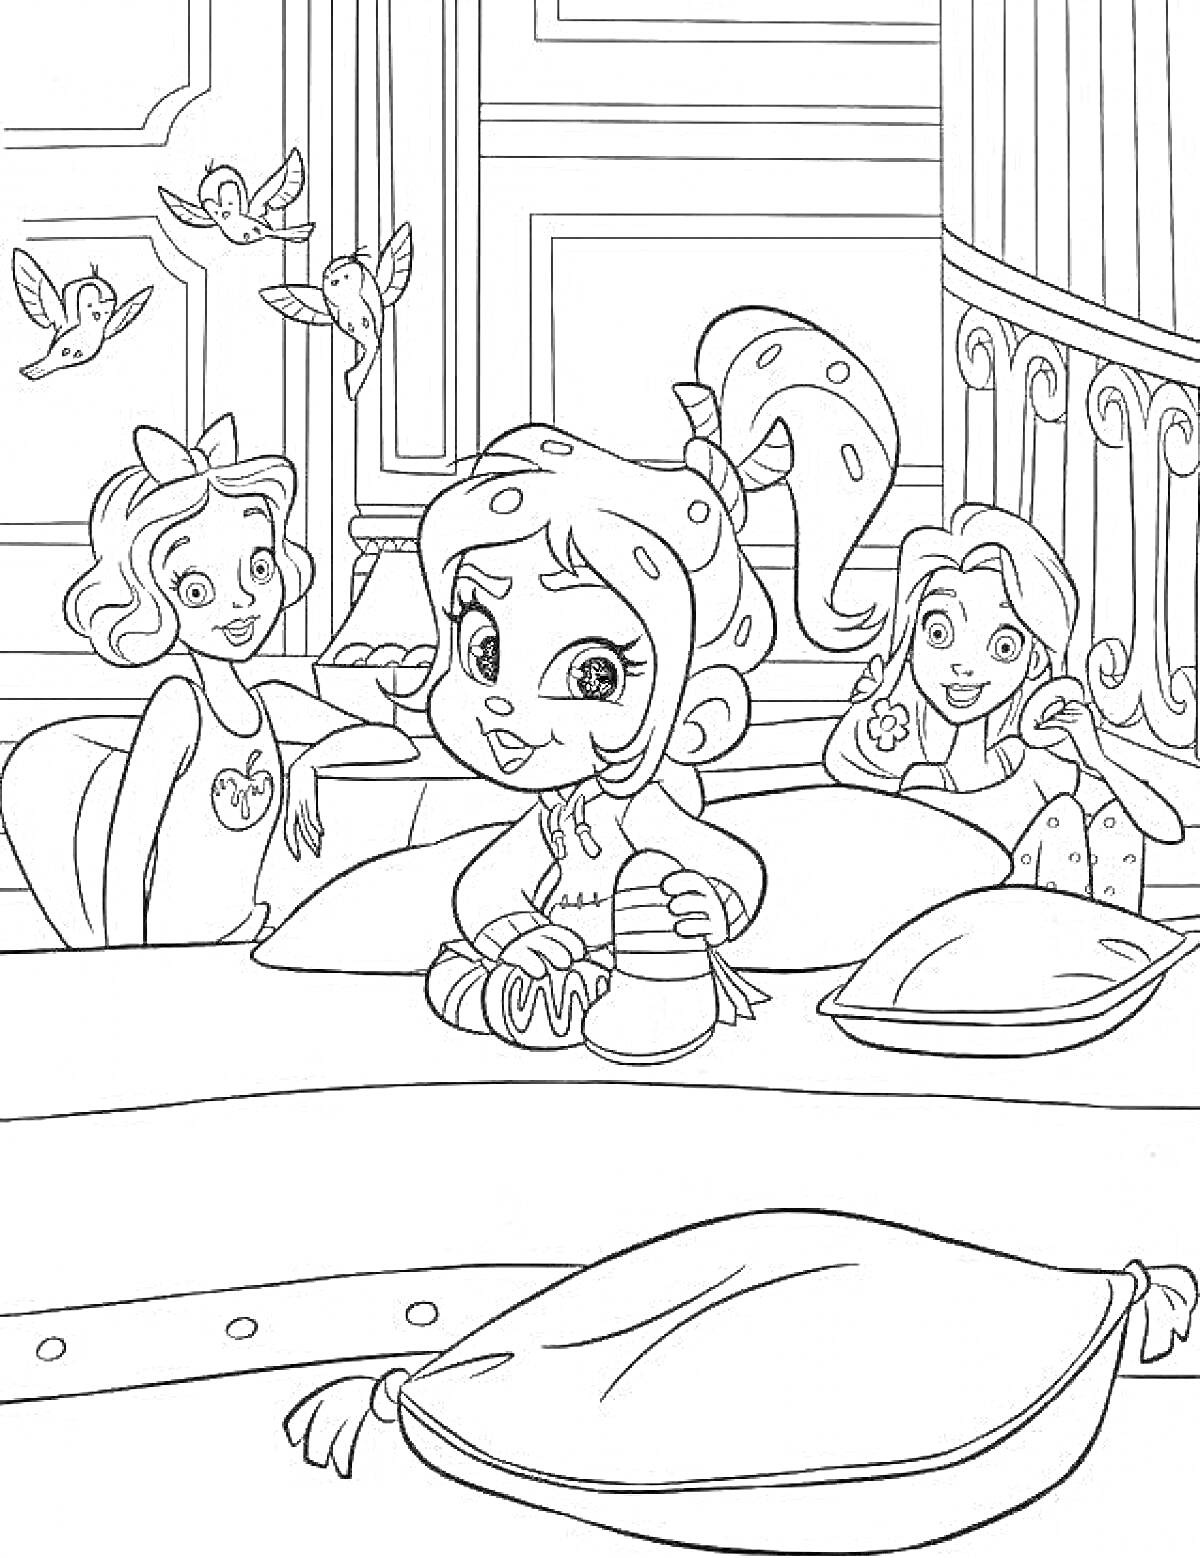 Раскраска Три девушки и птицы в комнате рядом с подушками и одеялом